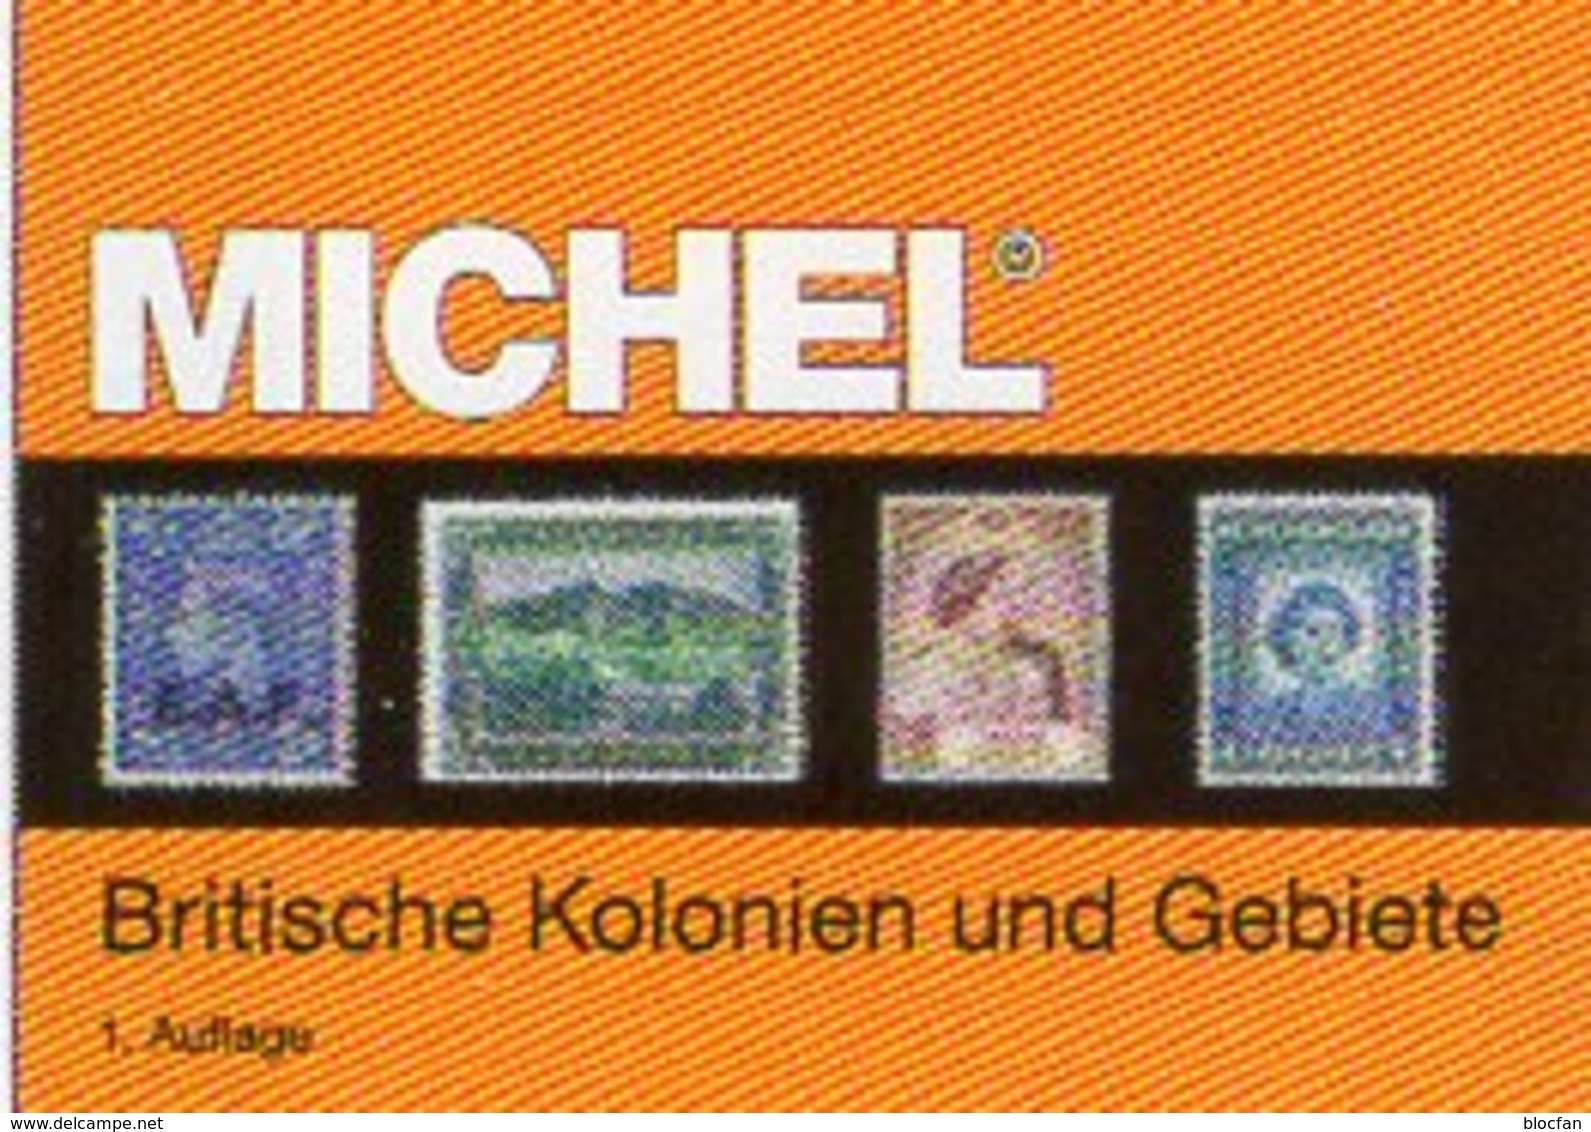 Großbritannien 1 Kolonien A-H MlCHEL 2018 New 89€ Britische Gebiete Stamp Catalogue Of Old UK ISBN978-3-95402-281-6 - Enzyklopädien